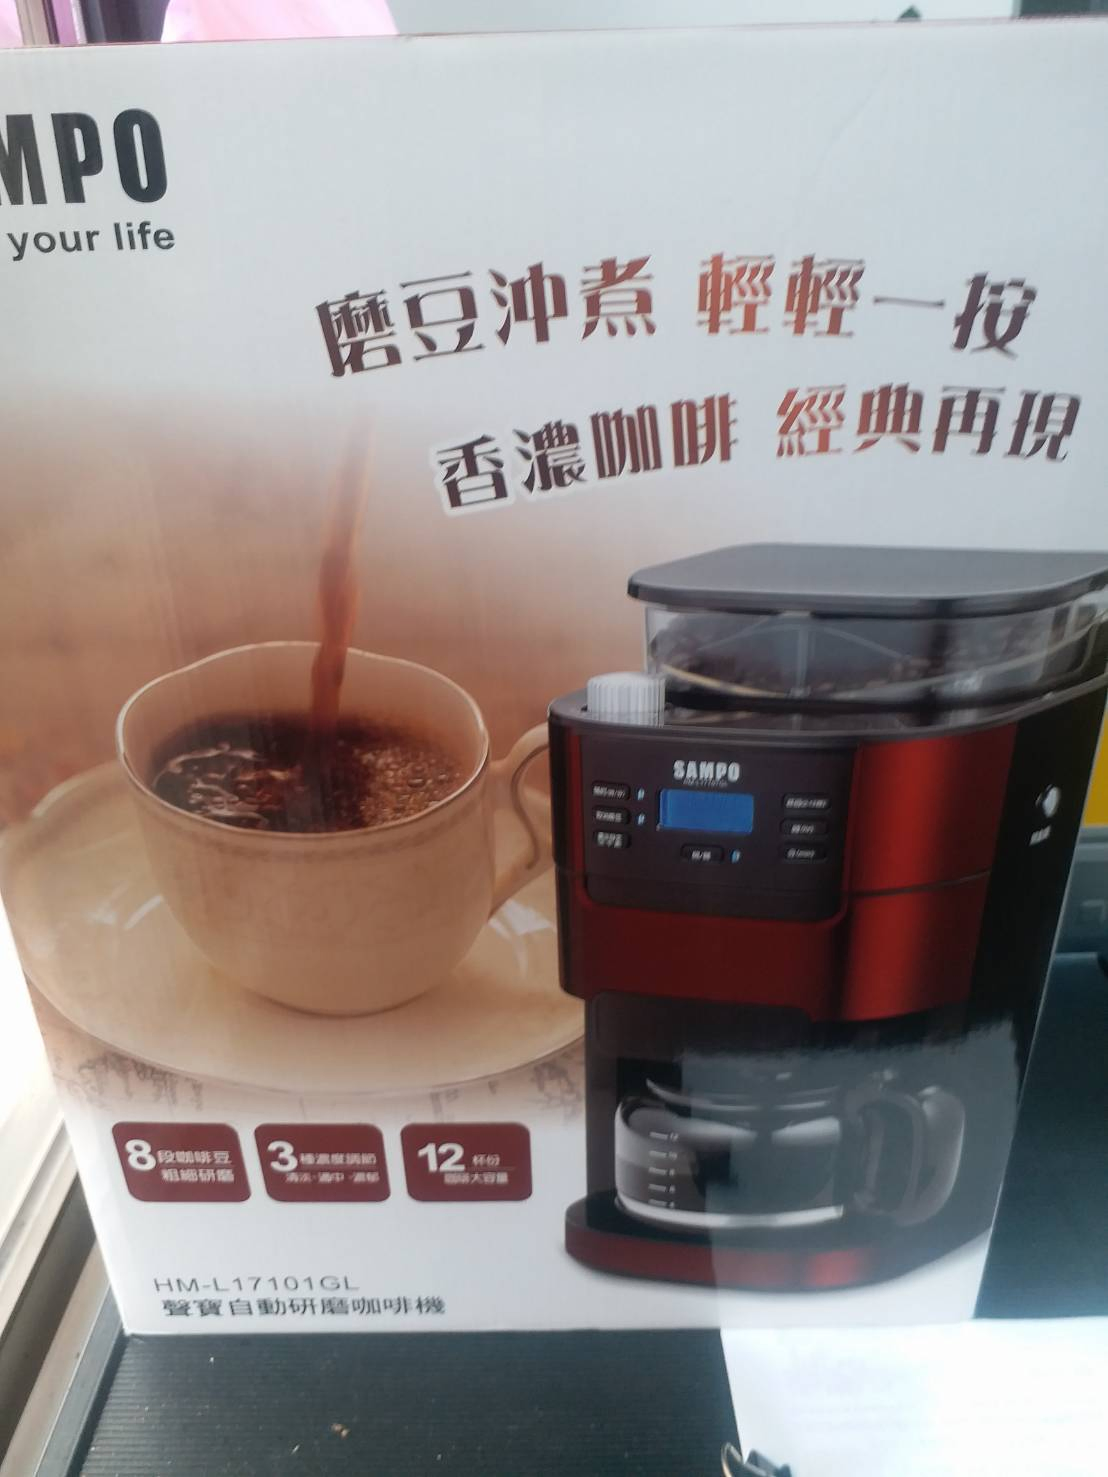 聲寶自動研磨咖啡機全新未拆封便宜賣